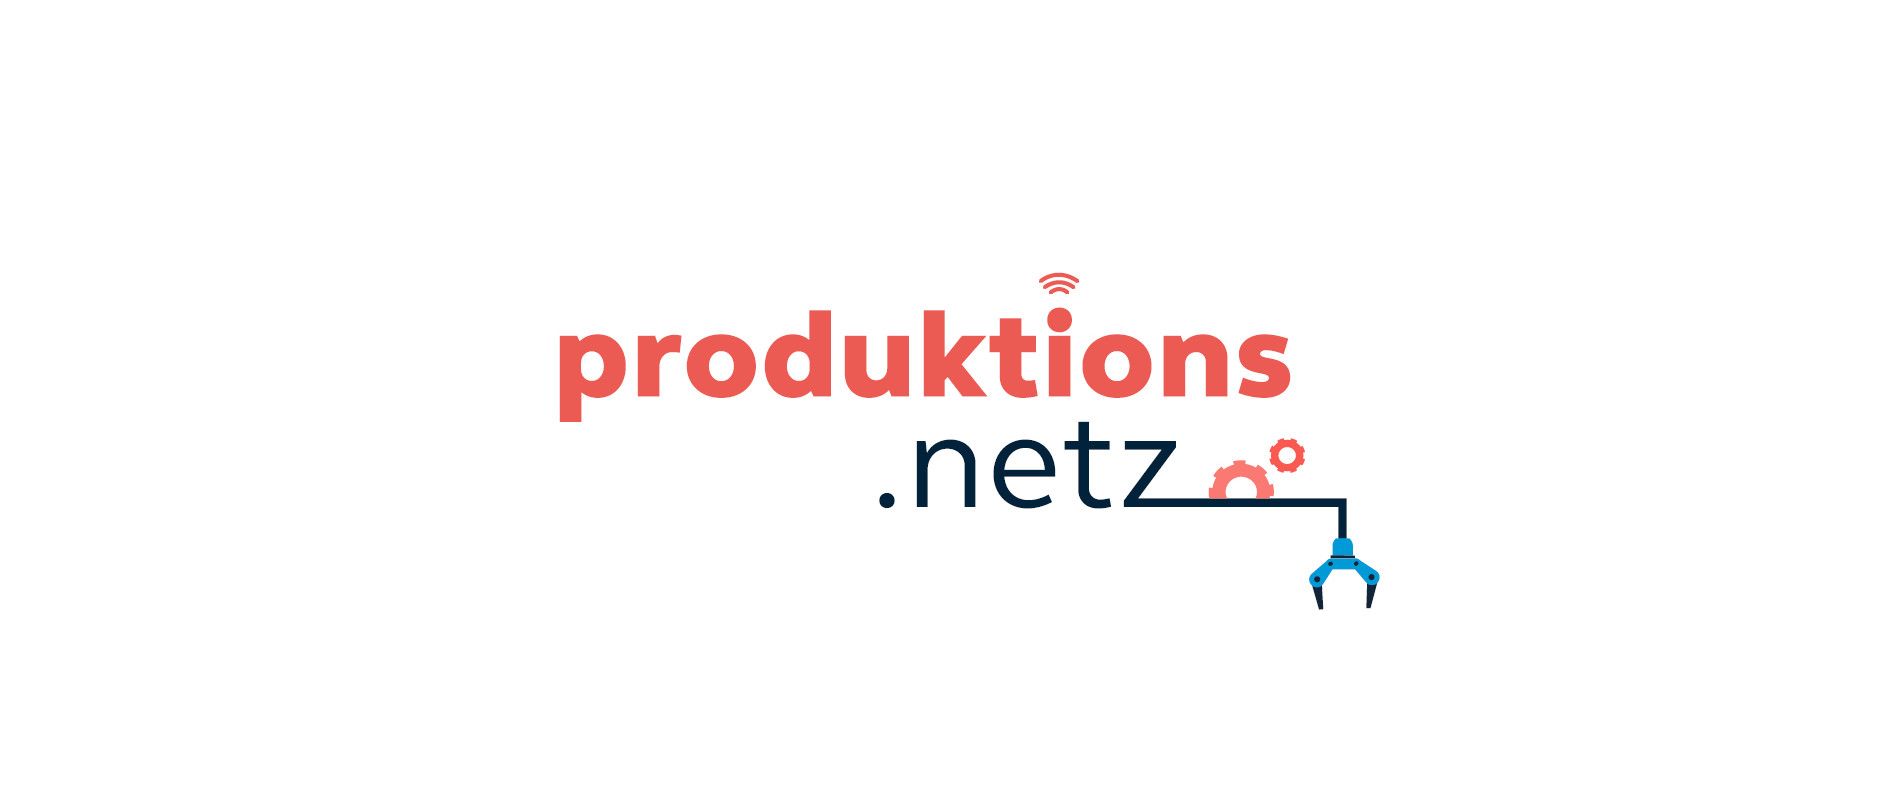 produktions.netz - 1. Netzwerktreffen für Produktion und Innovation in Kiel